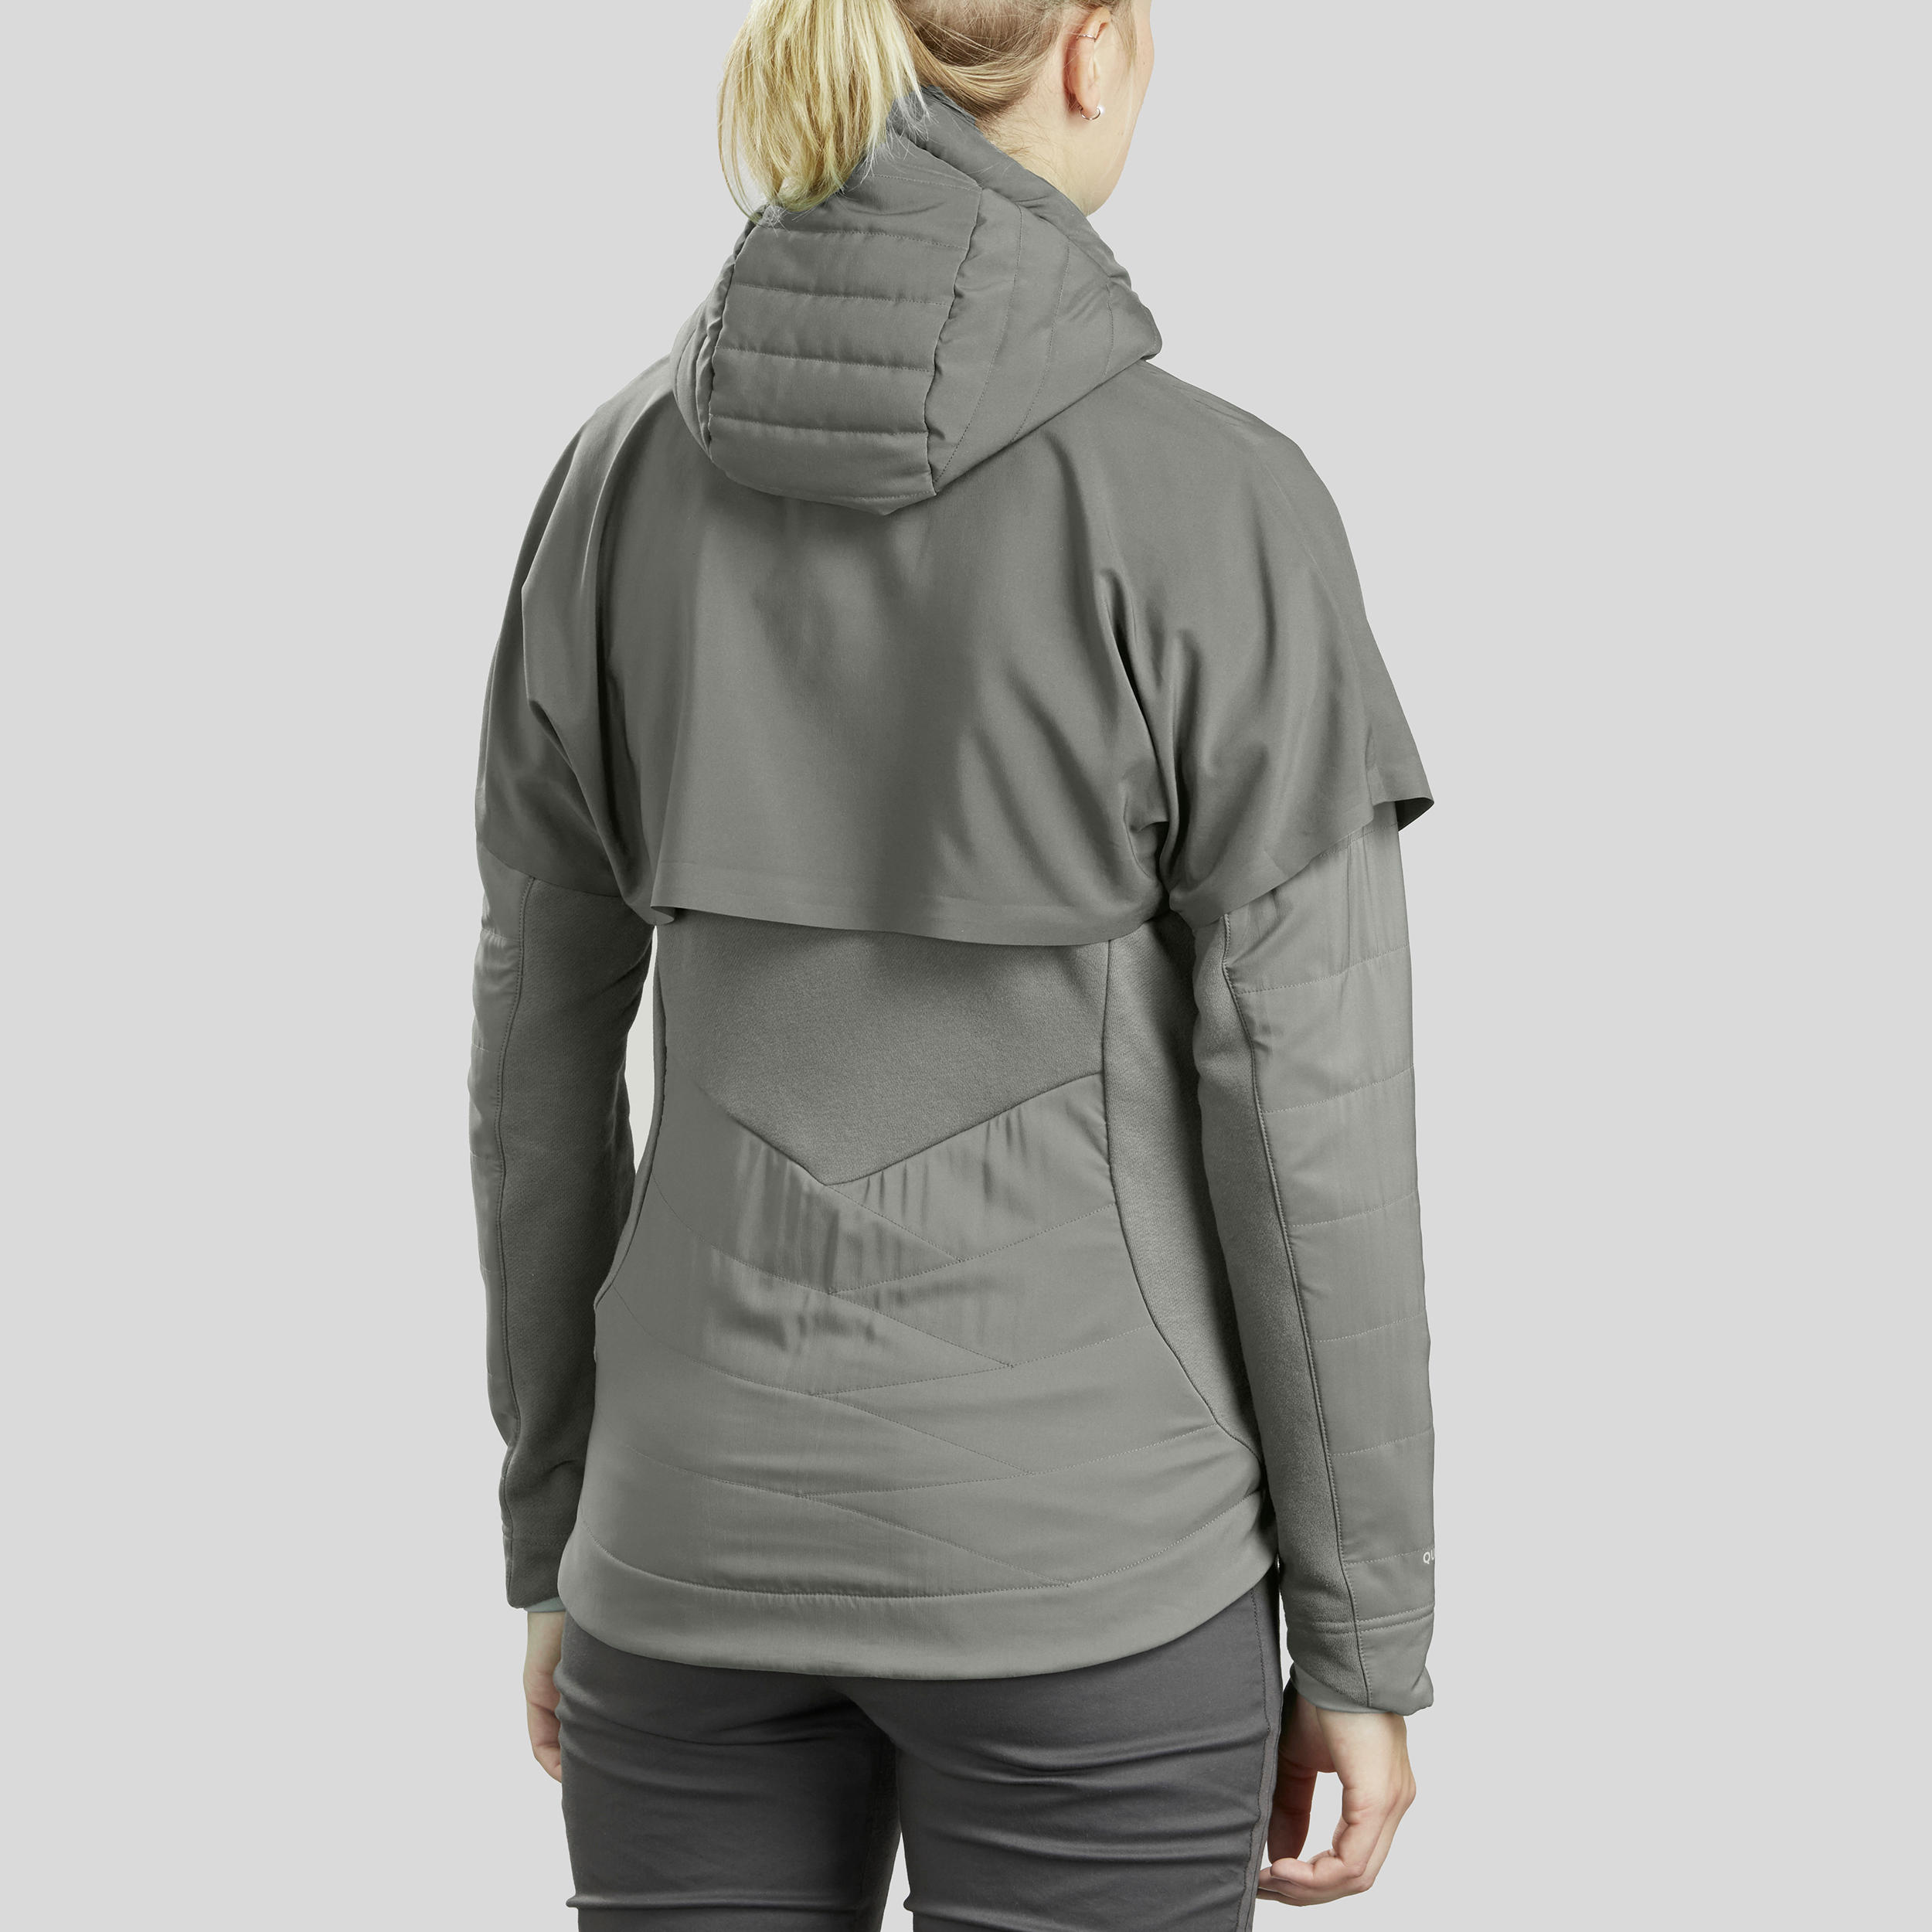 Women's Hiking Sweatshirt - Khaki 3/8